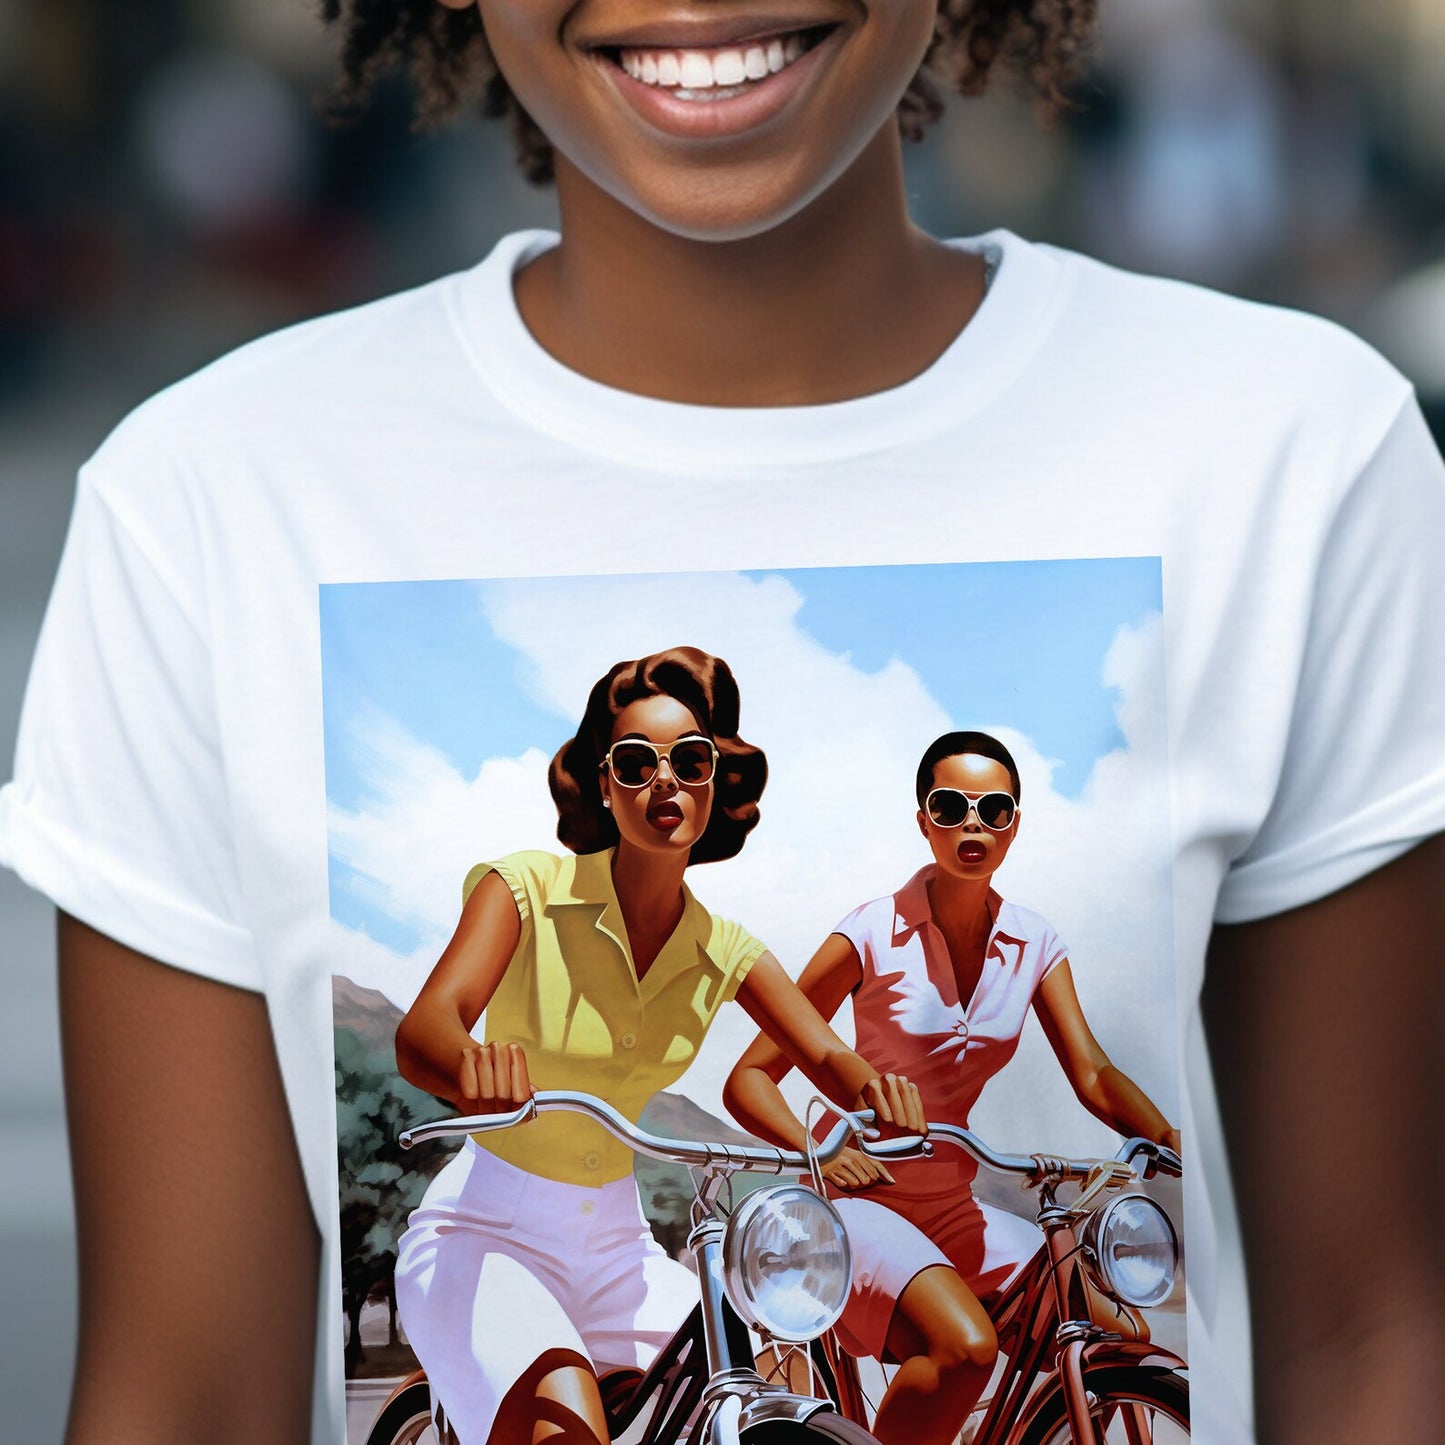 Vintage Bicycle Girls Shirt